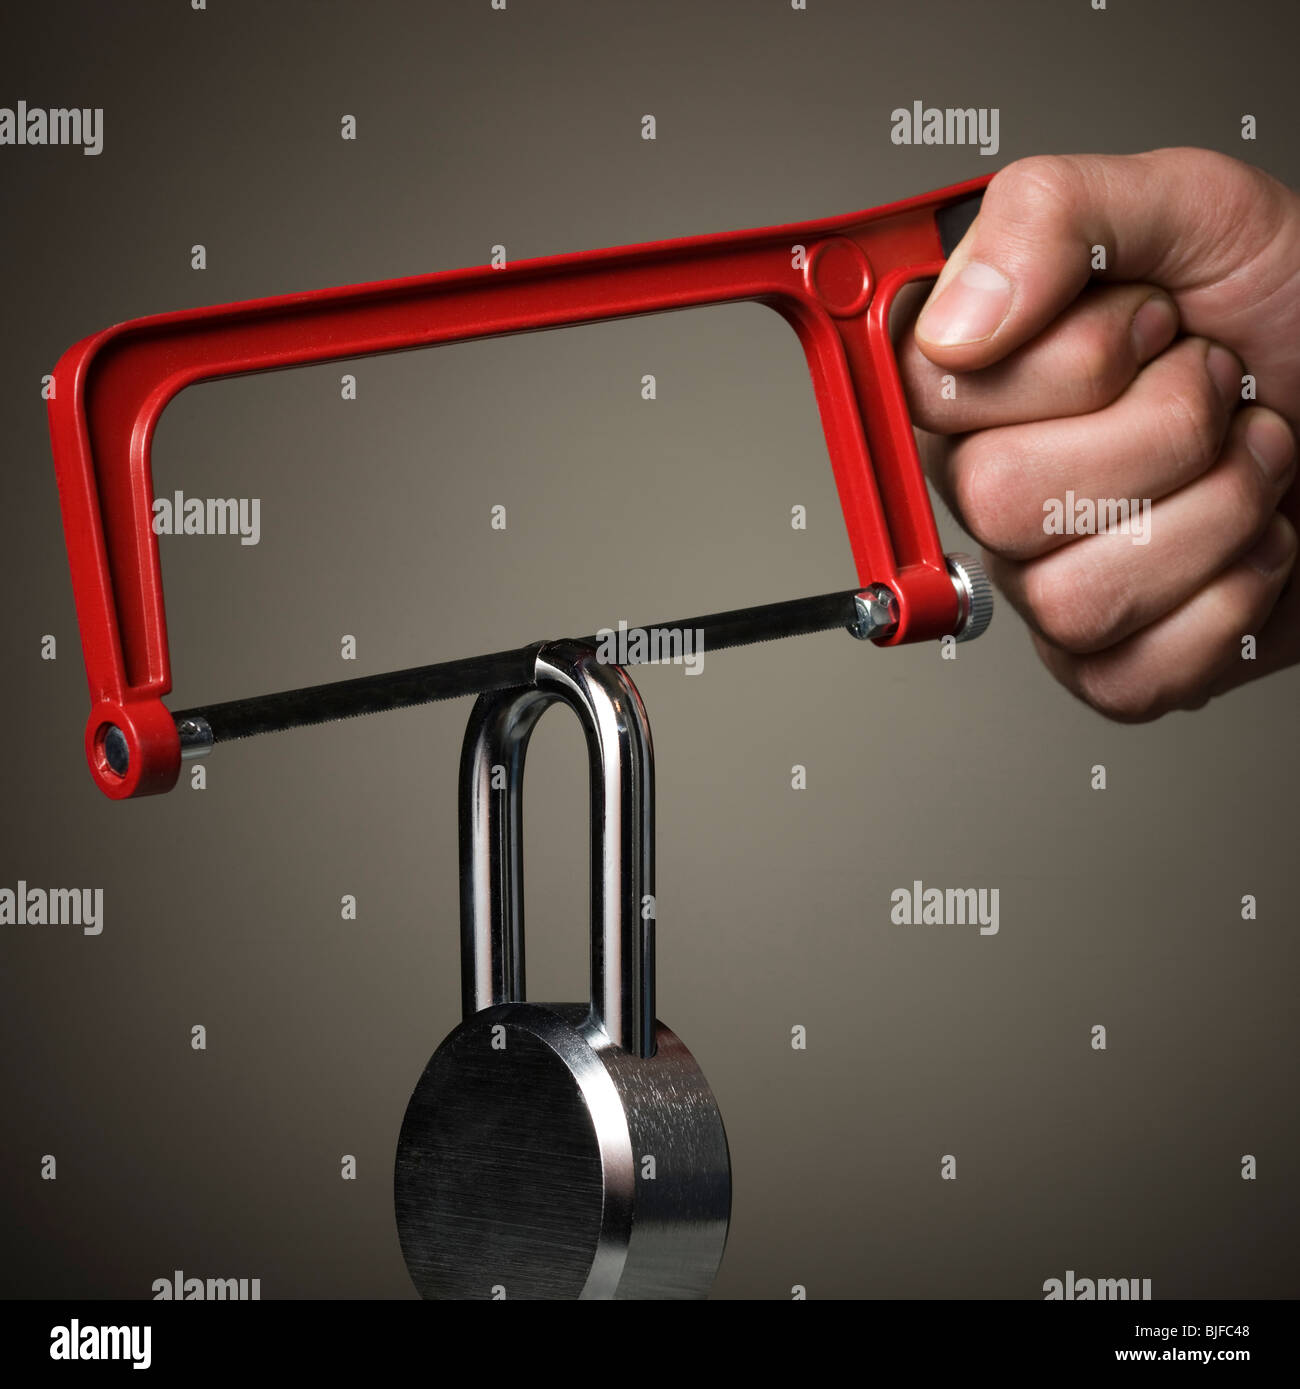 hacksaw cutting a padlock Stock Photo